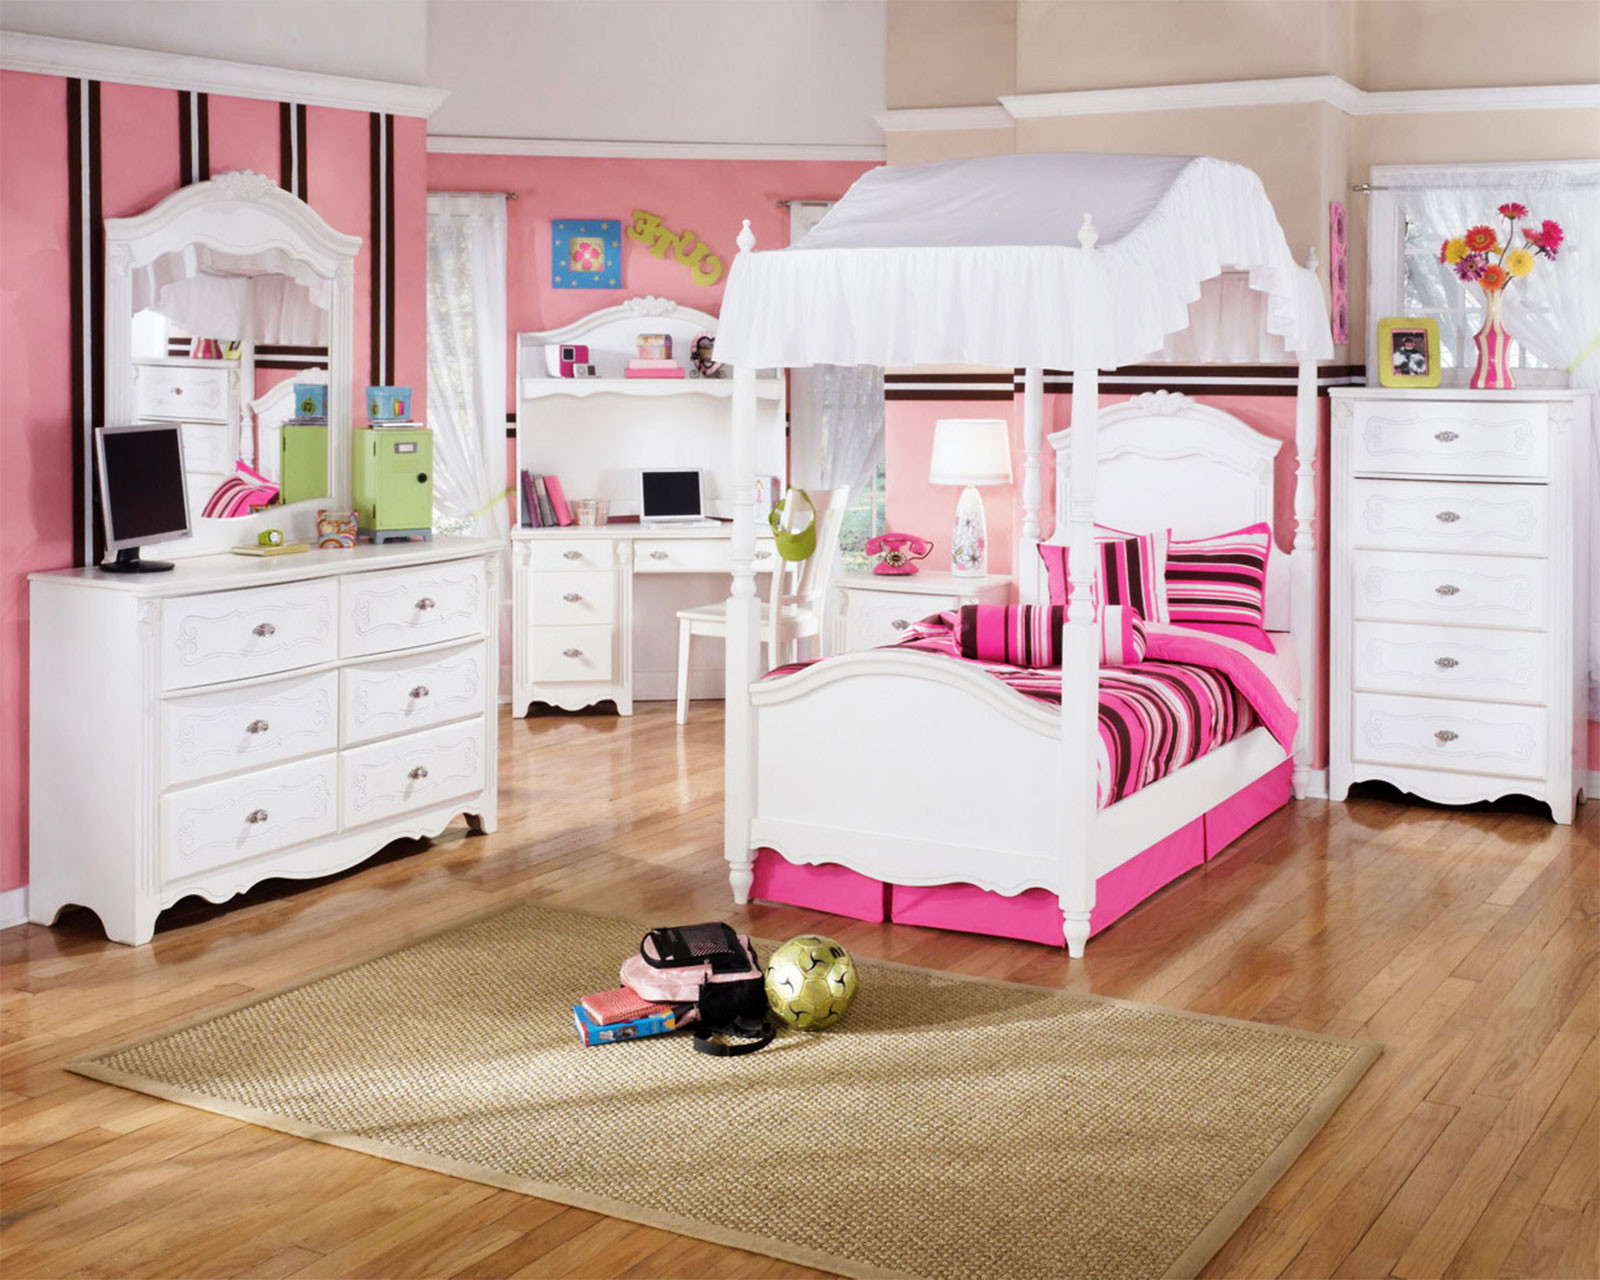 Toddler Bedroom Set For Girls
 kids bedroom furniture girls Furniture Ideas